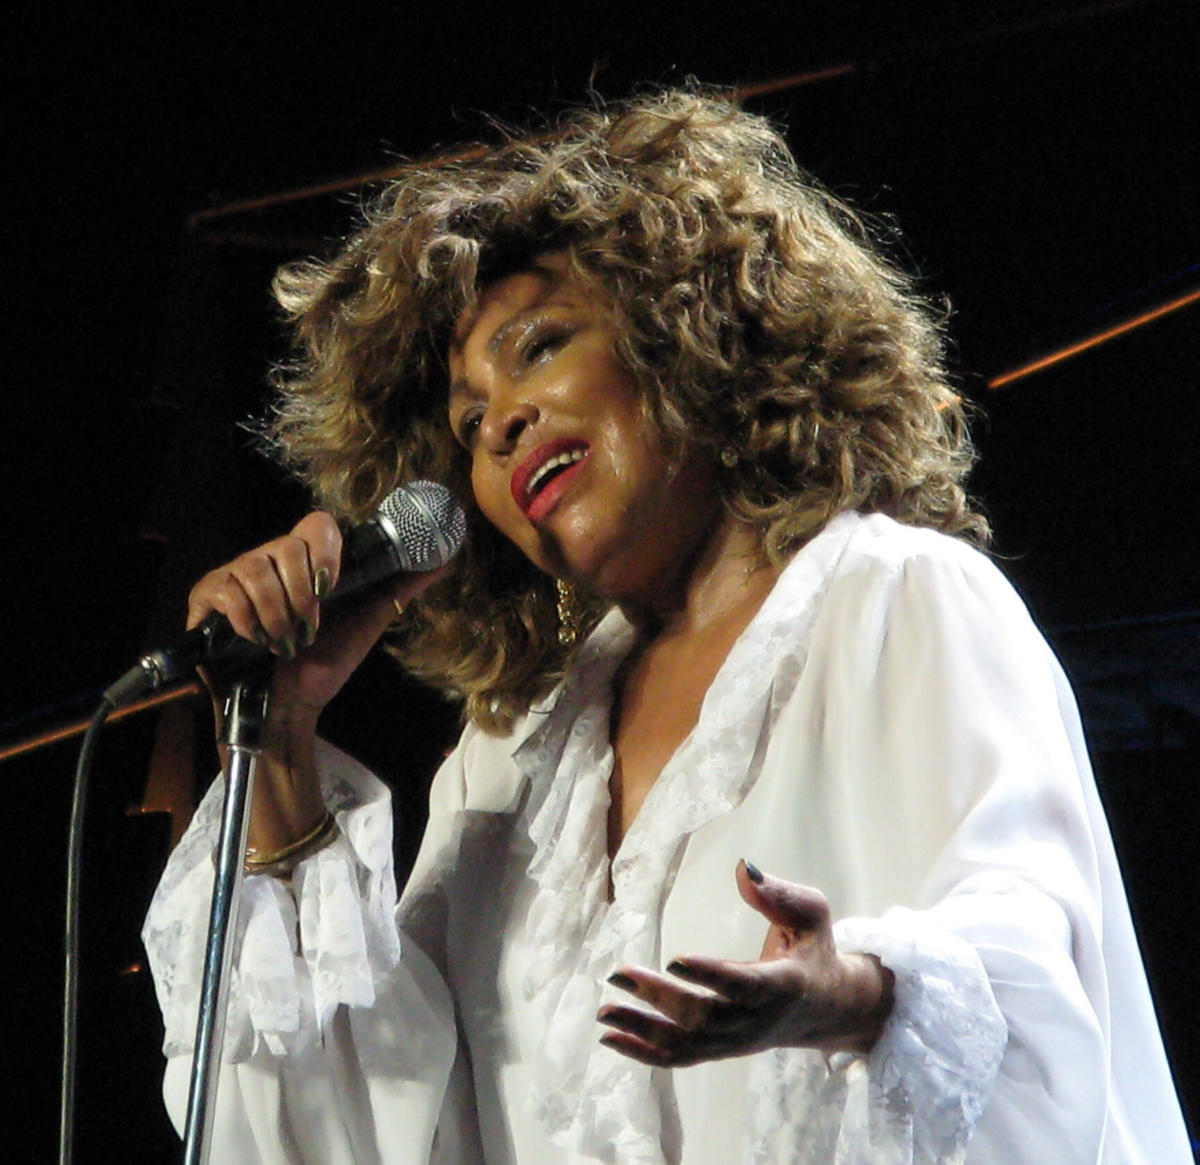 Tina Turner nel 2009